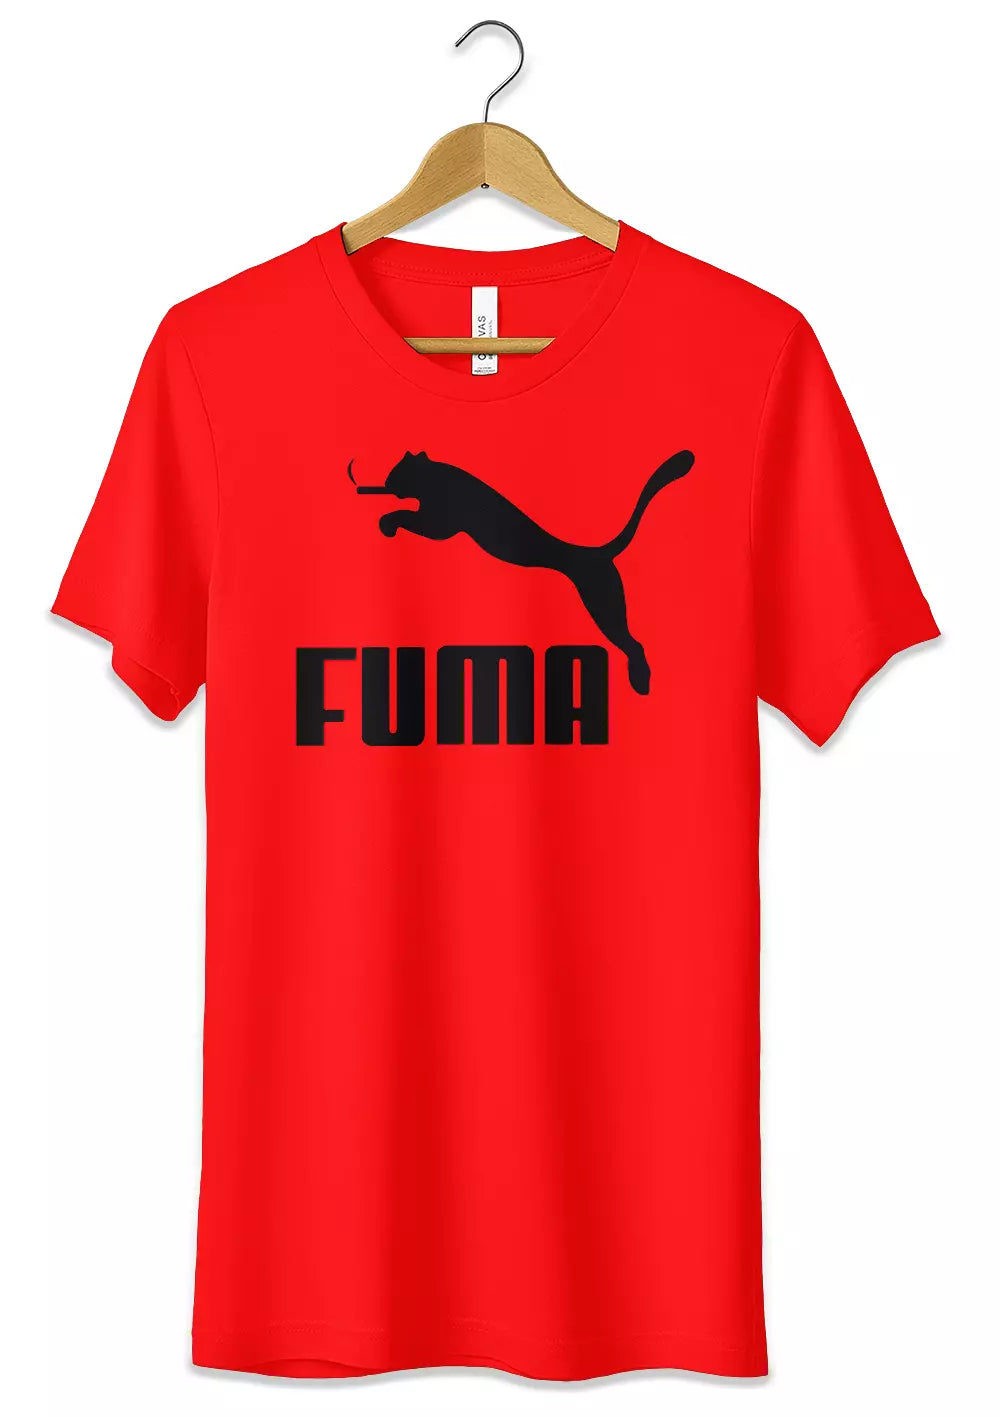 T-Shirt Divertente Fuma Maglietta Logo Fake Puma Personalizzato Ironico Fumatori Idea Regalo Uomo Donna Unisex, CmrDesignStore, T-Shirt, t-shirt-divertente-fuma-maglietta-logo-fake-puma-personalizzato-ironico-fumatori-idea-regalo-uomo-donna-unisex, CmrDesignStore